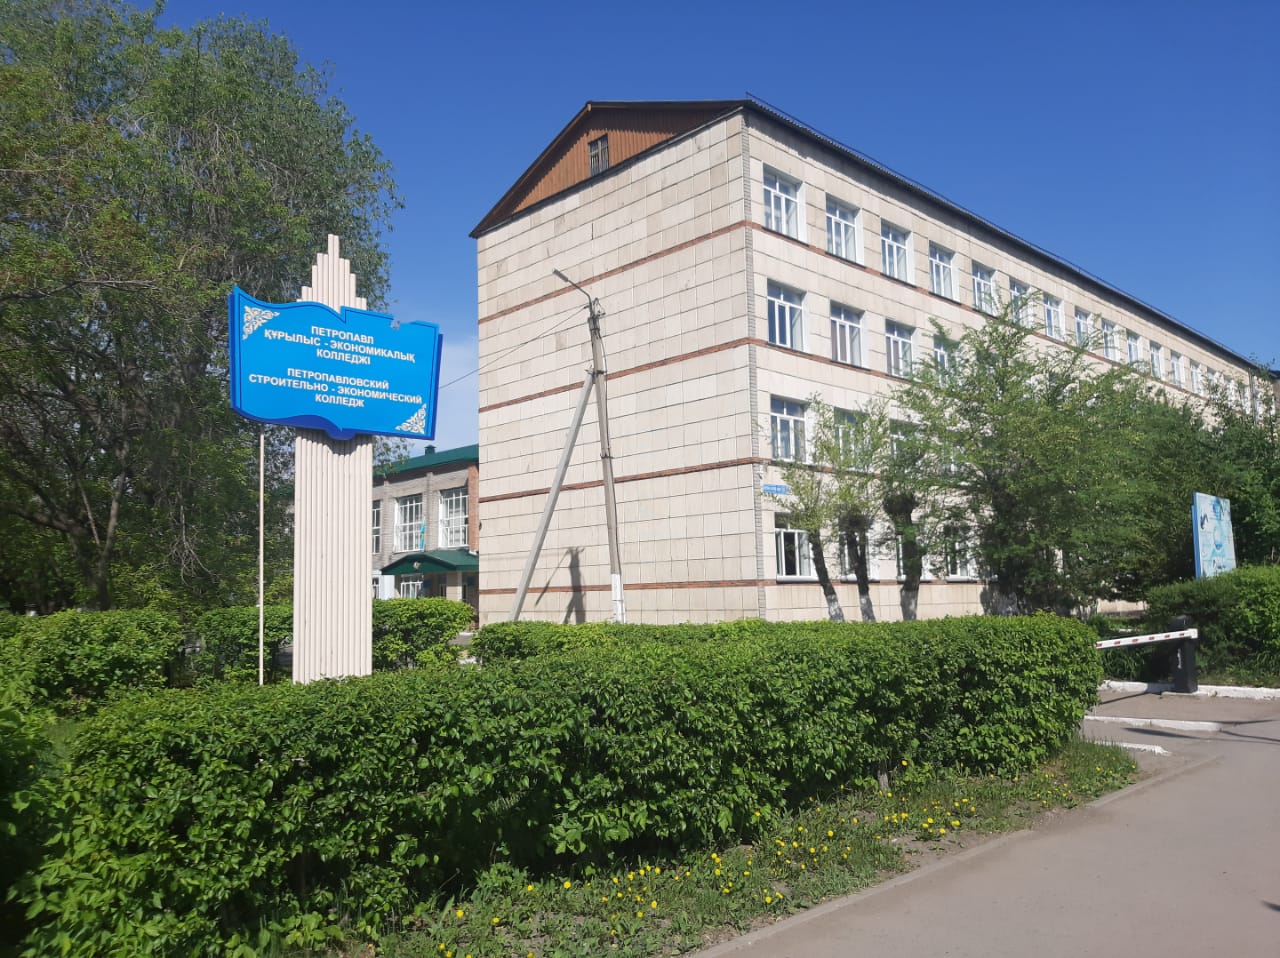 Петропавловский строительно-экономический колледж